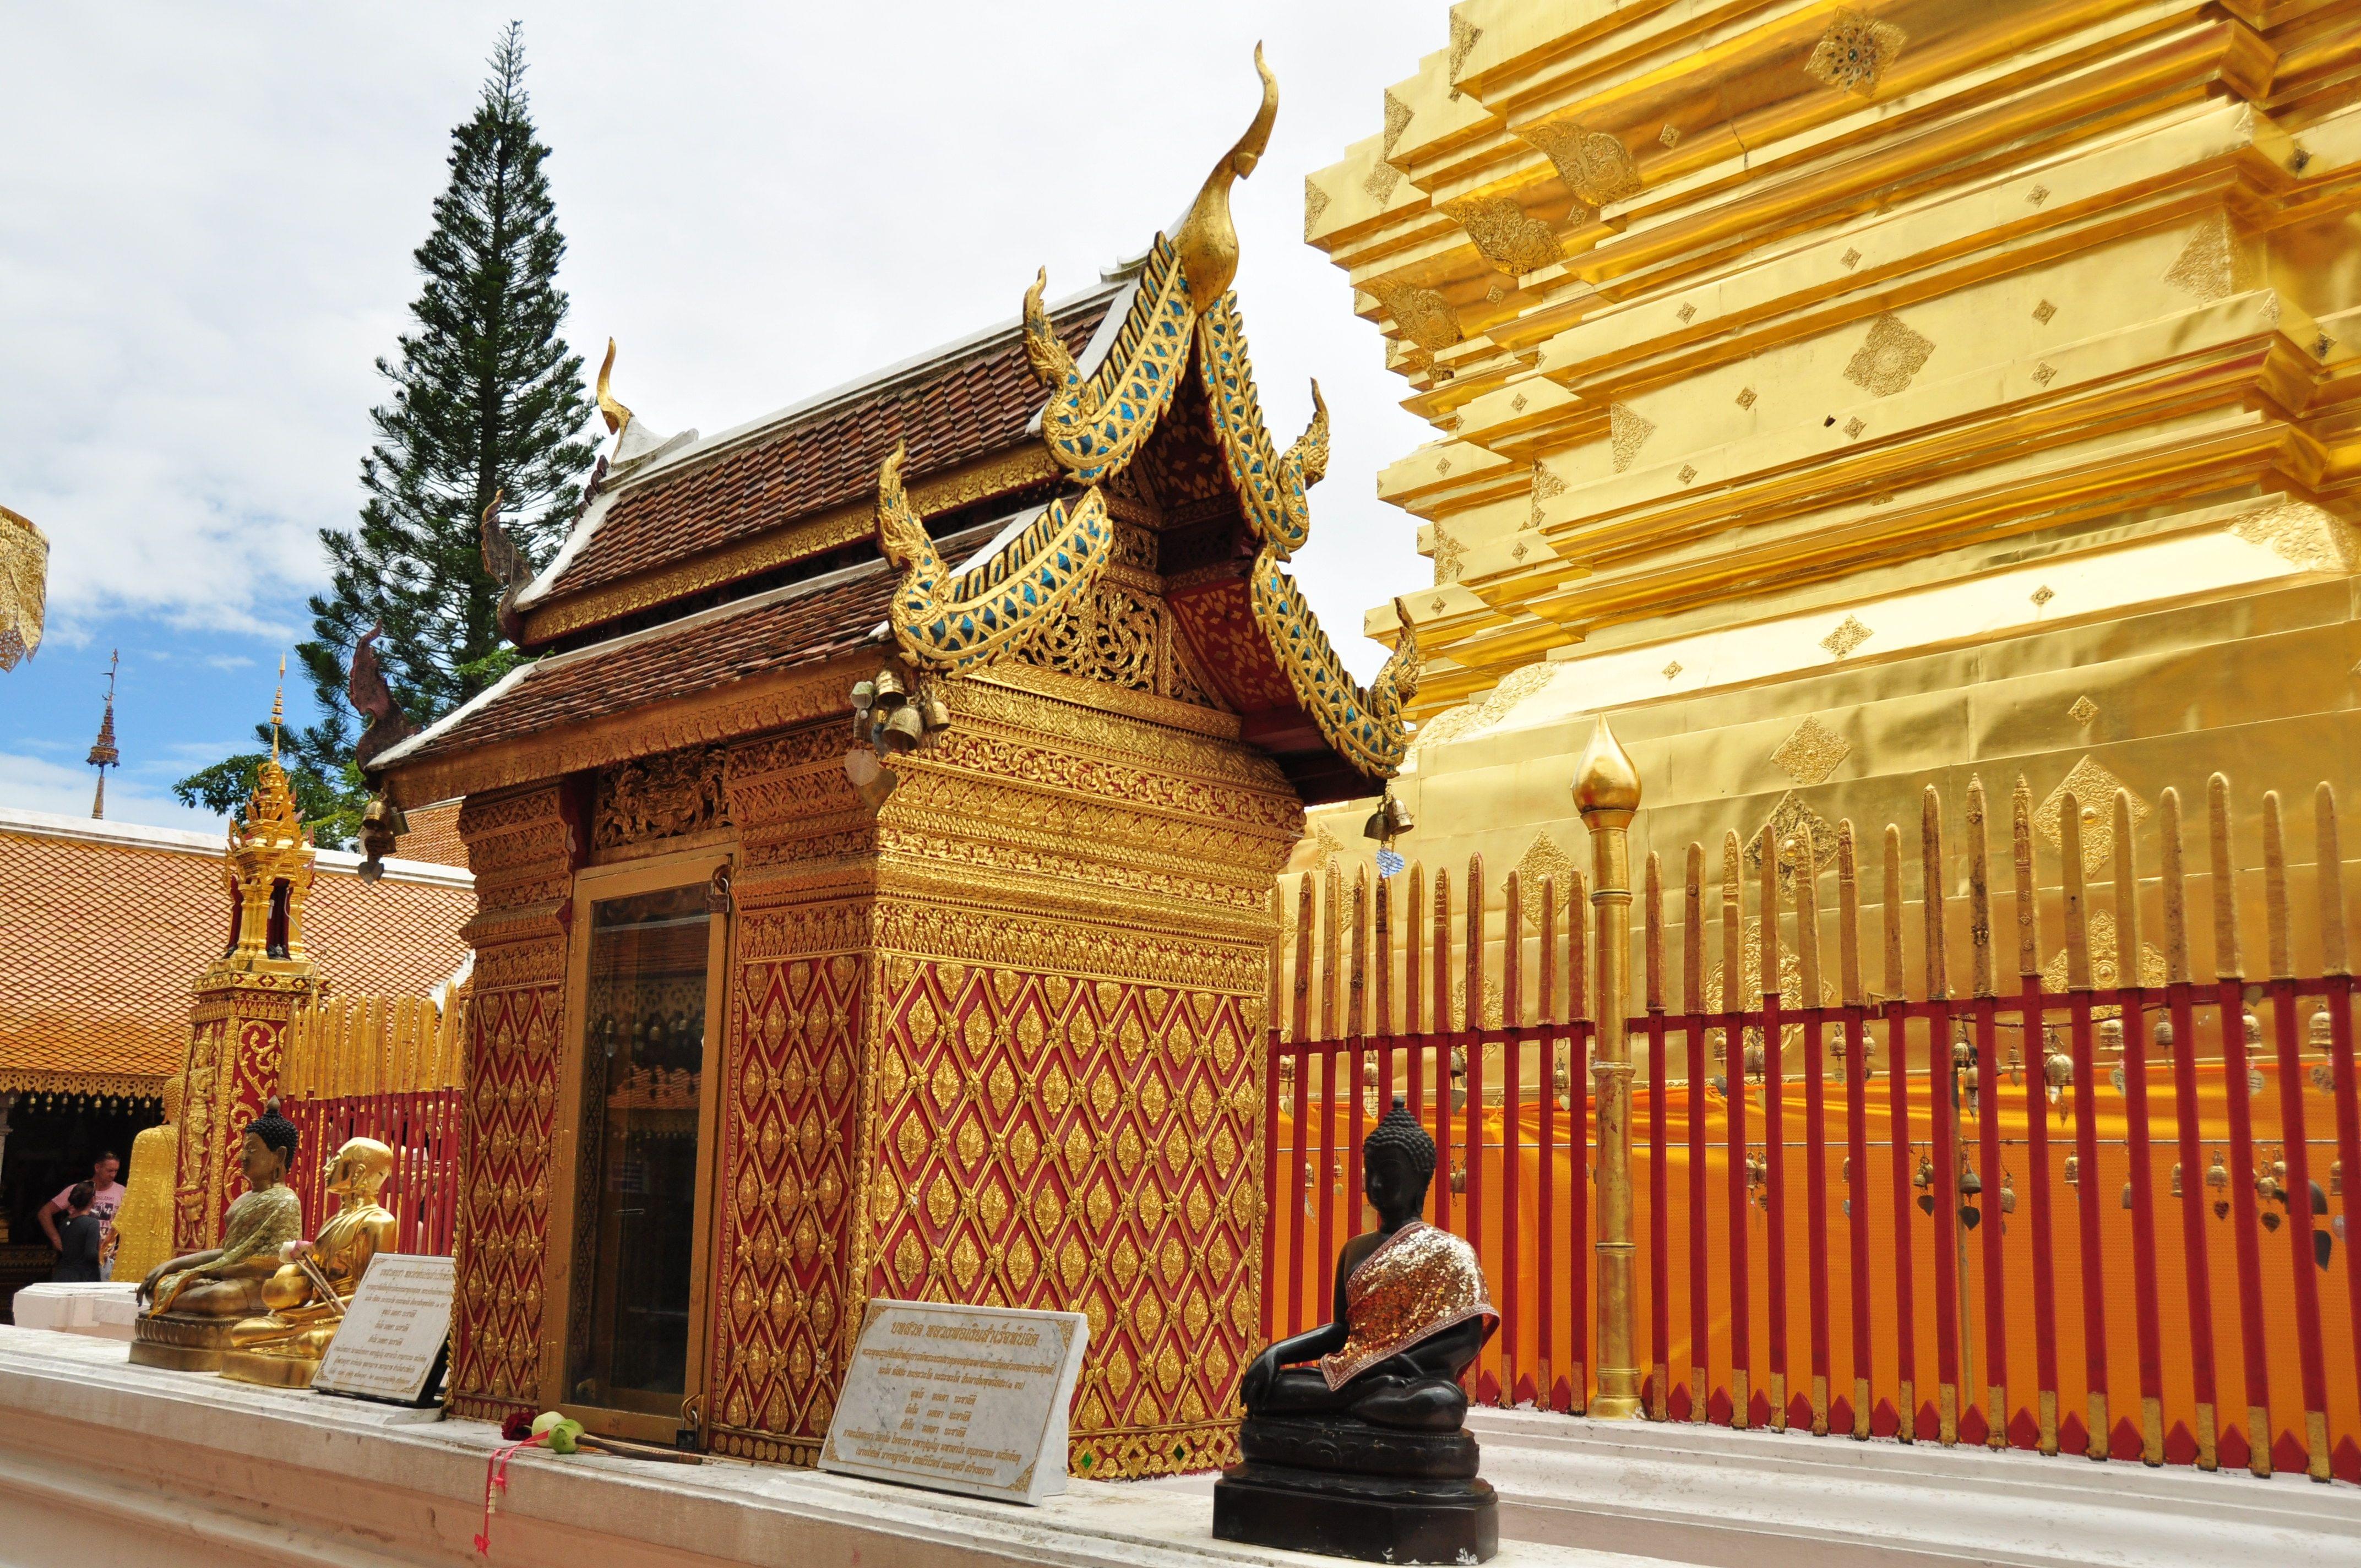 Wat Phra That Doi Suthep Tour